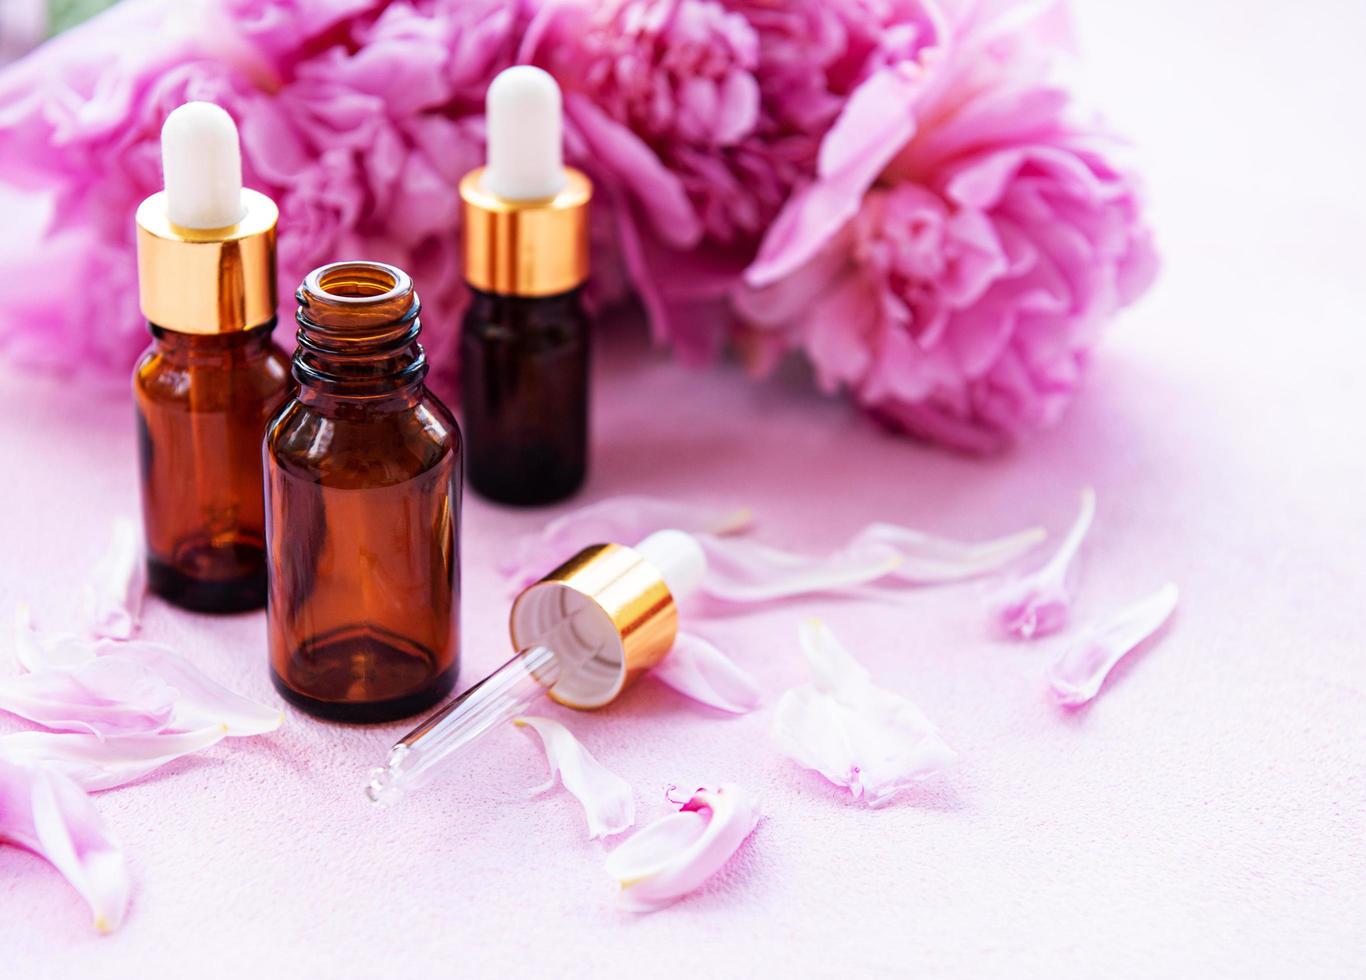 aceites esenciales de aromaterapia y peonías rosas foto